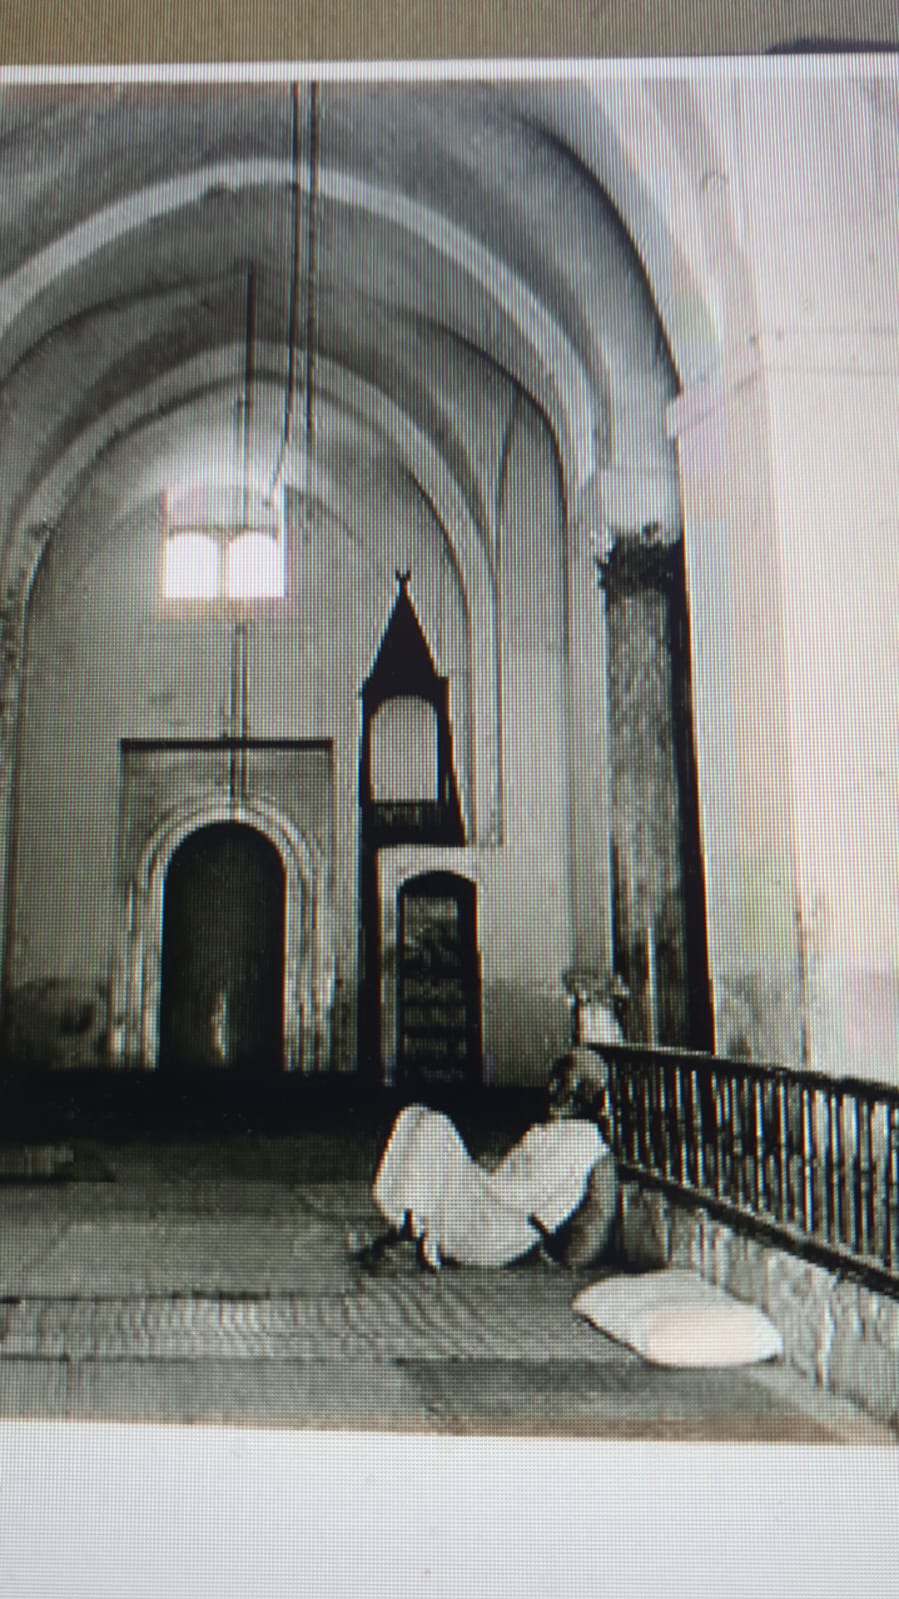  أيام نكبة| صور تاريخية نادرة للمسجد العمري الكبير في اللد